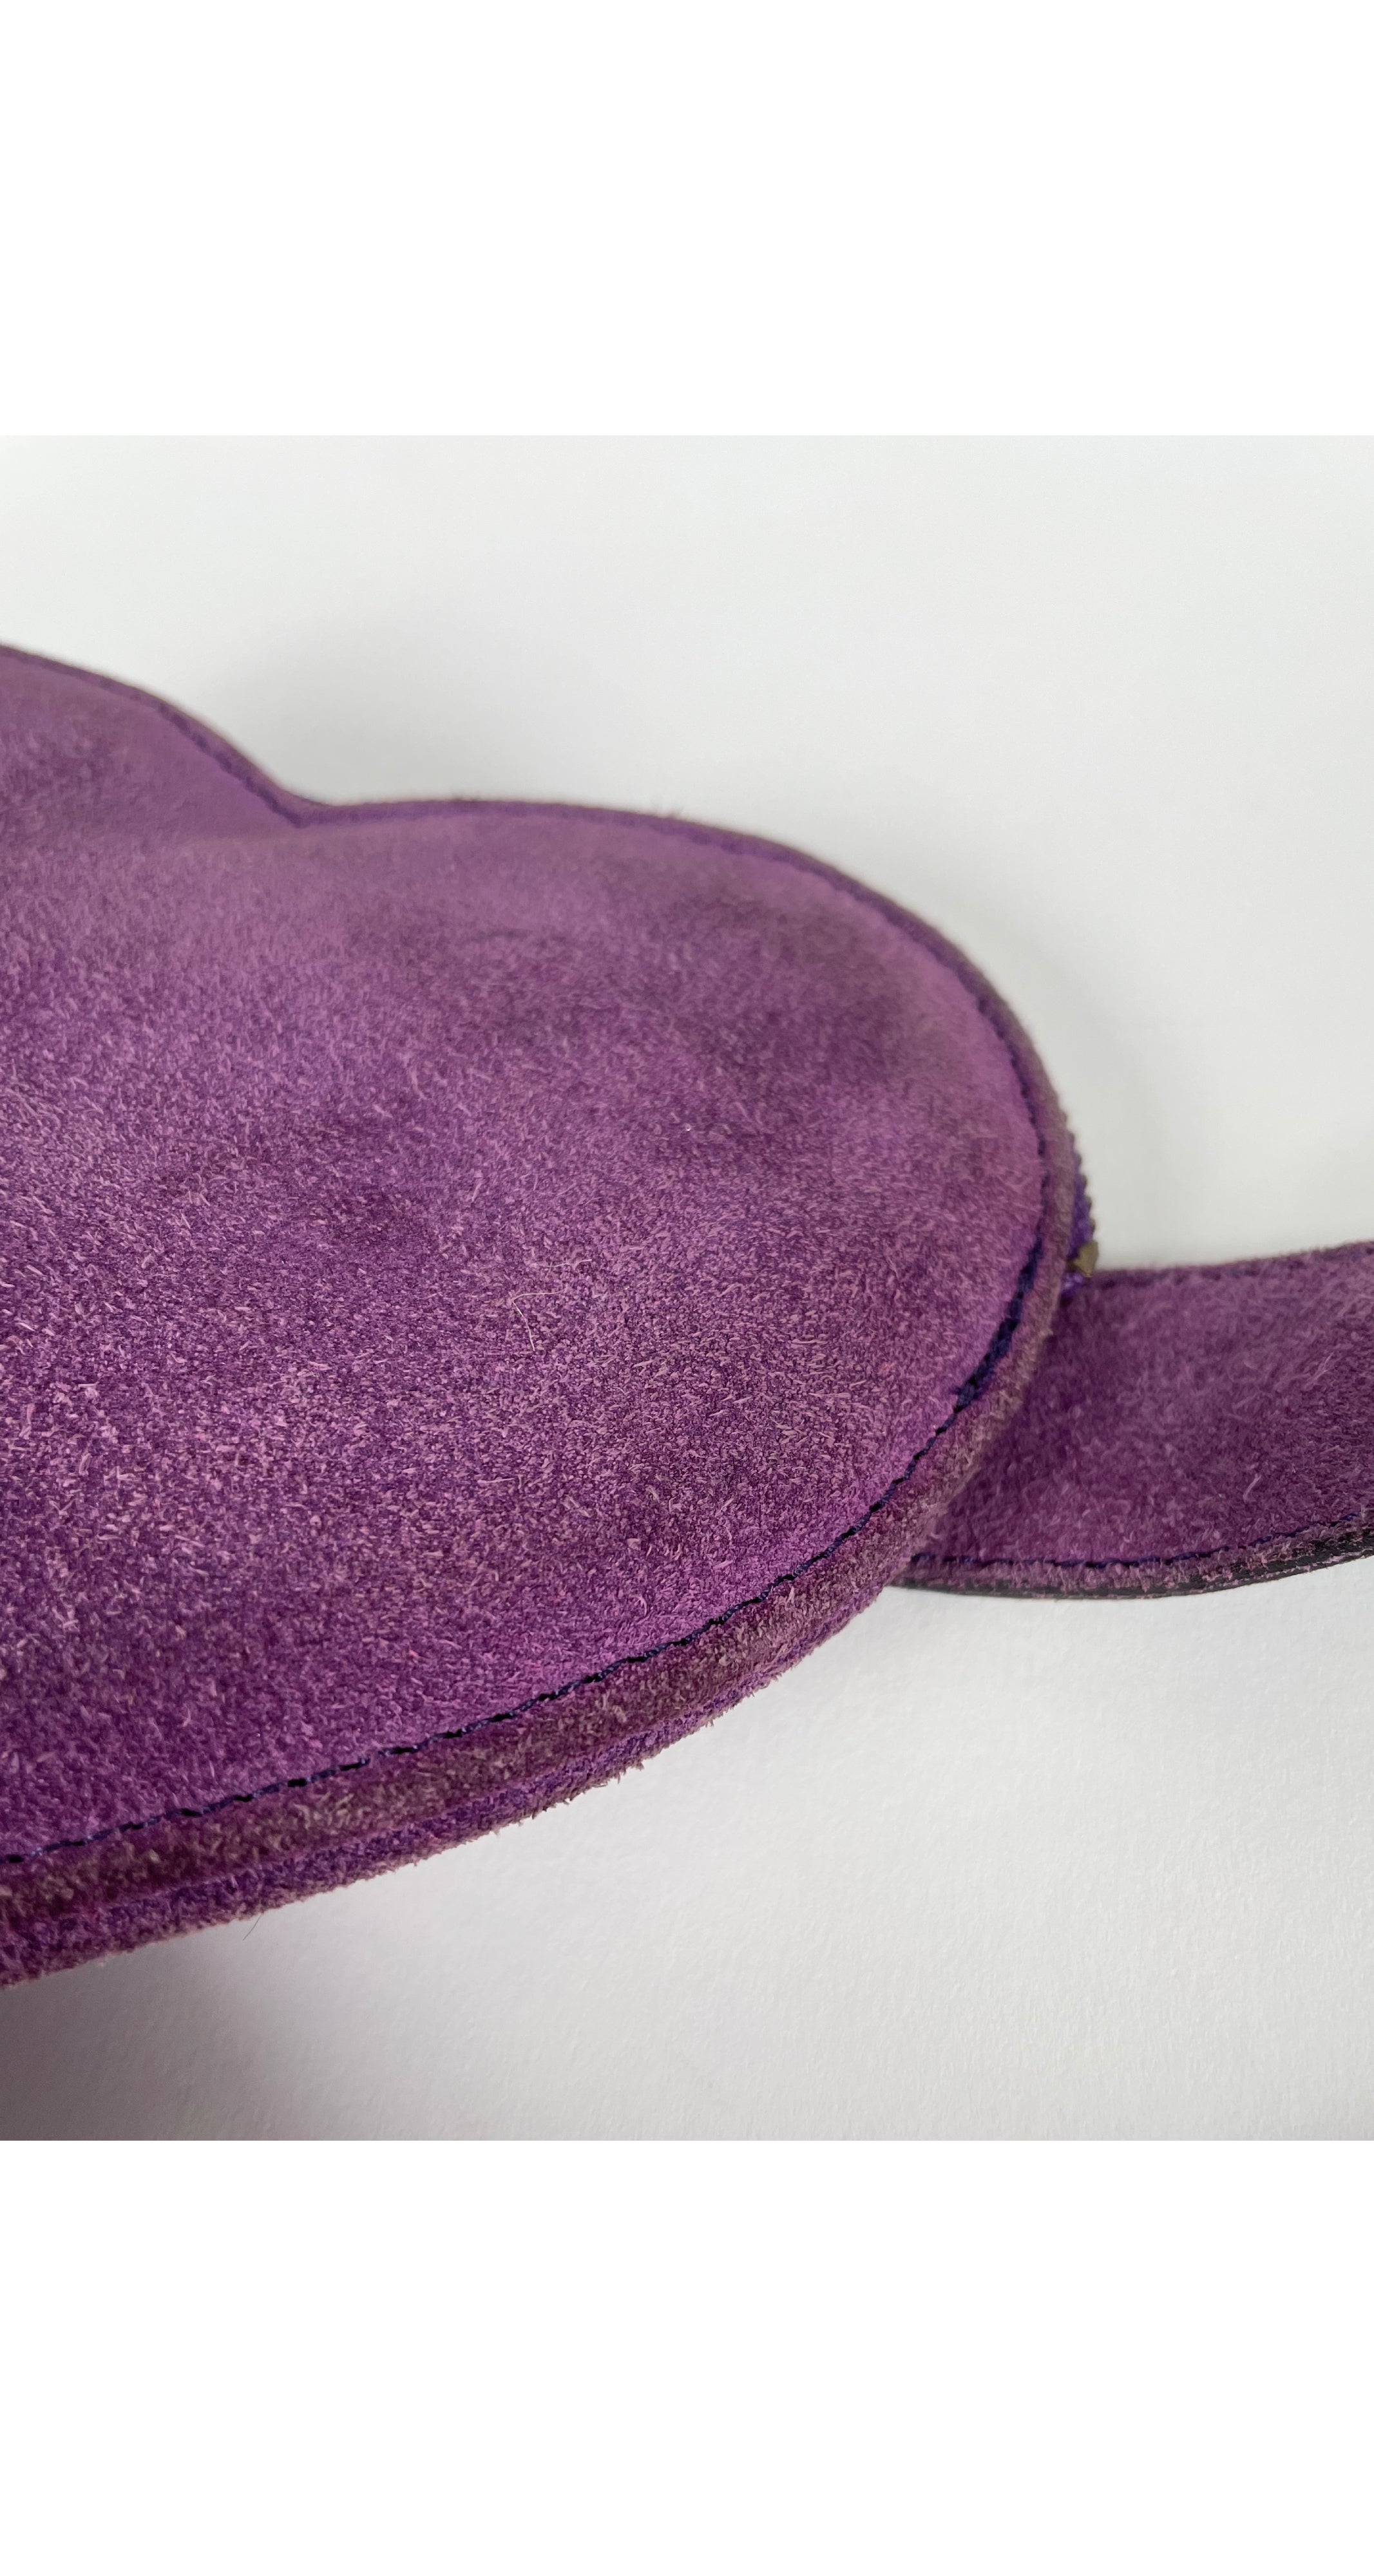 1980s Heart-Shaped Purple Suede Belt Bag